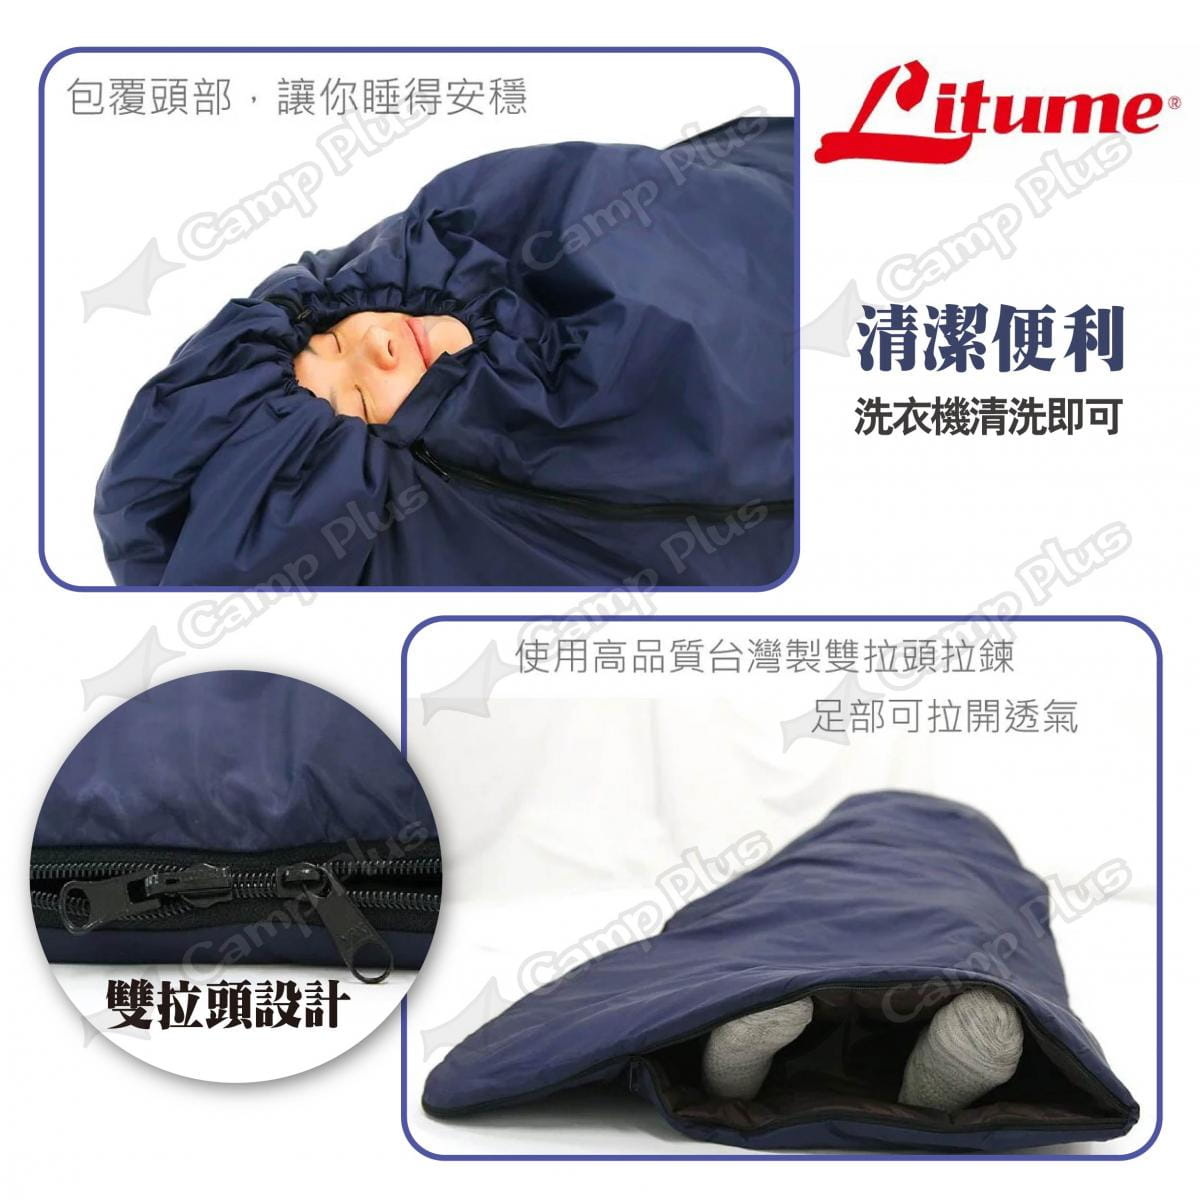 【LITUME】意都美 舒眠保暖睡袋 C055 深藍/深灰 悠遊戶外 5